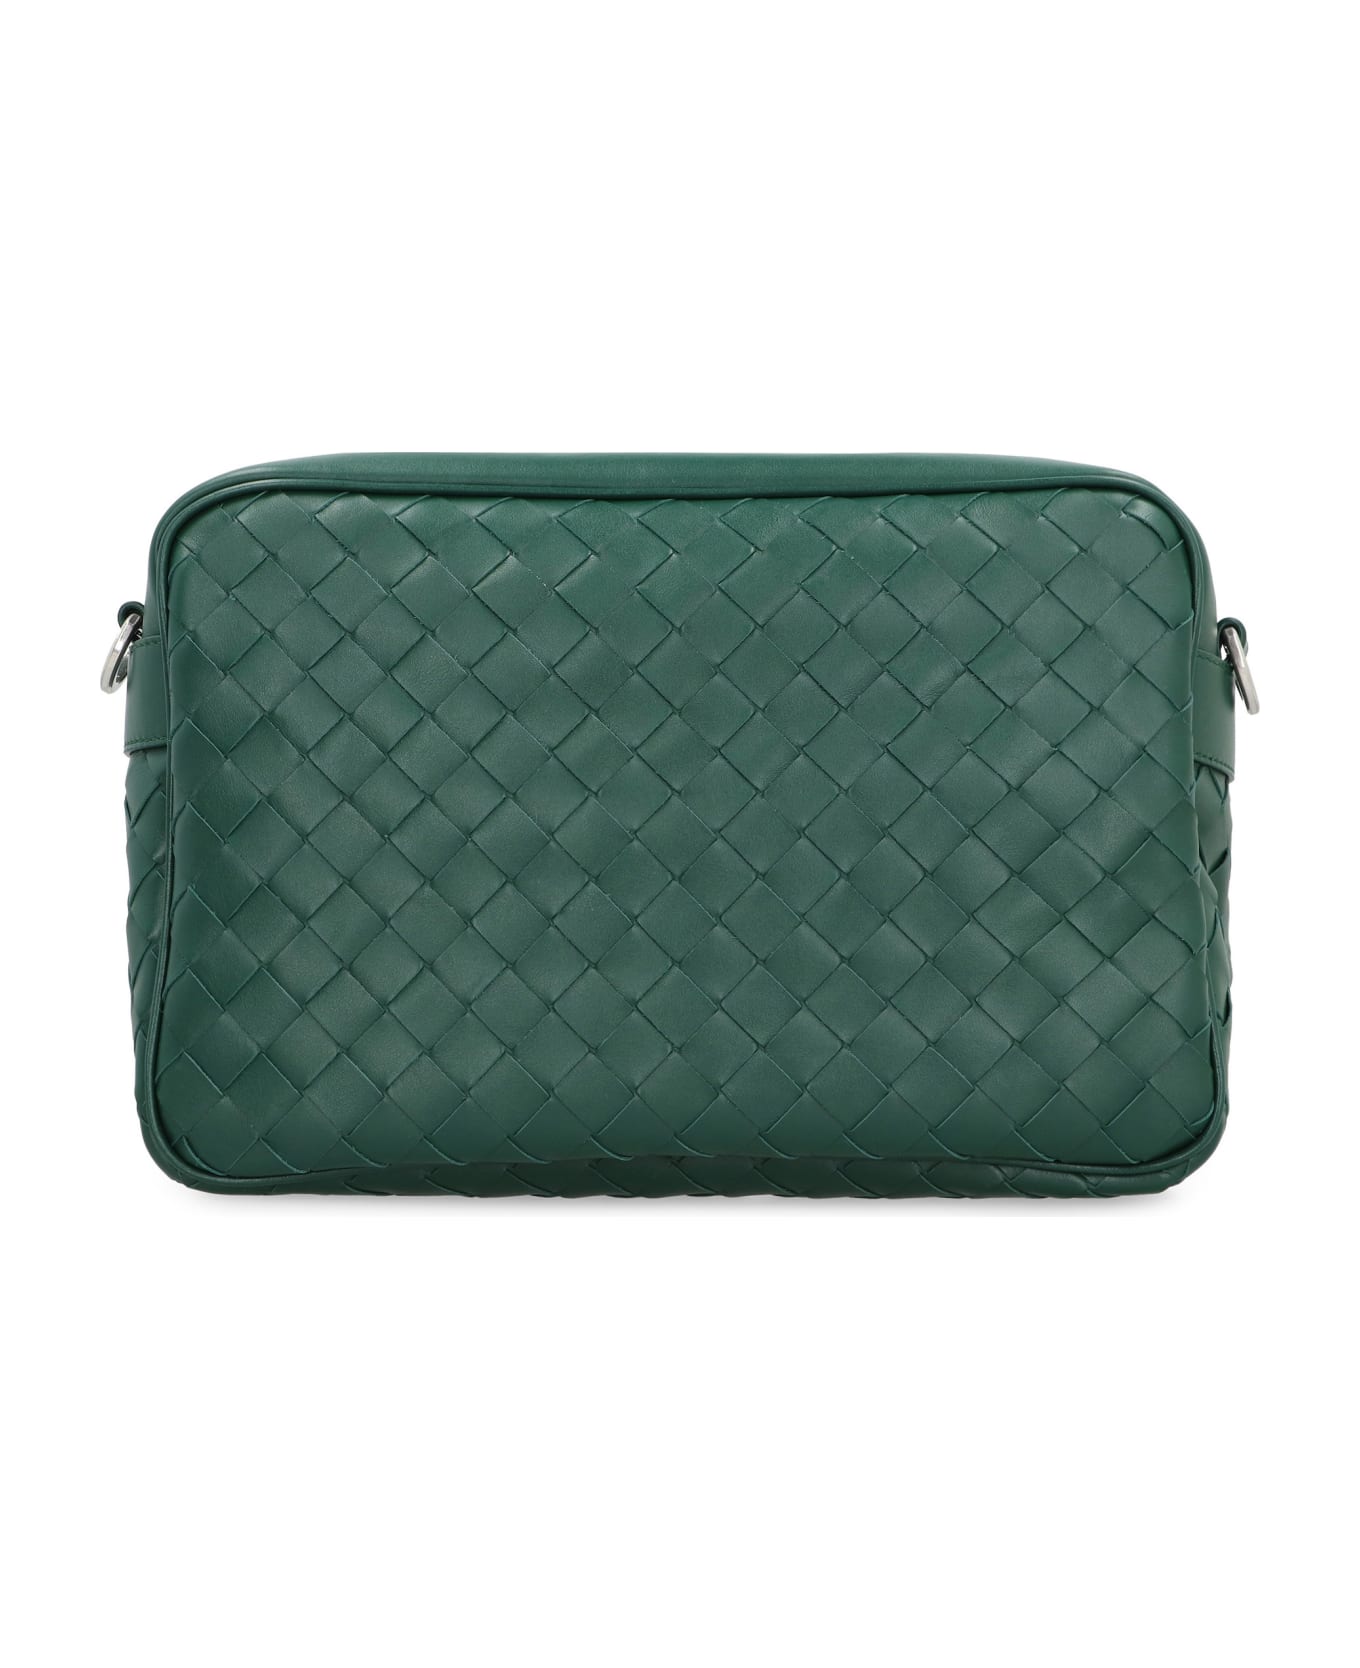 Bottega Veneta Leather Camera Bag - green ショルダーバッグ